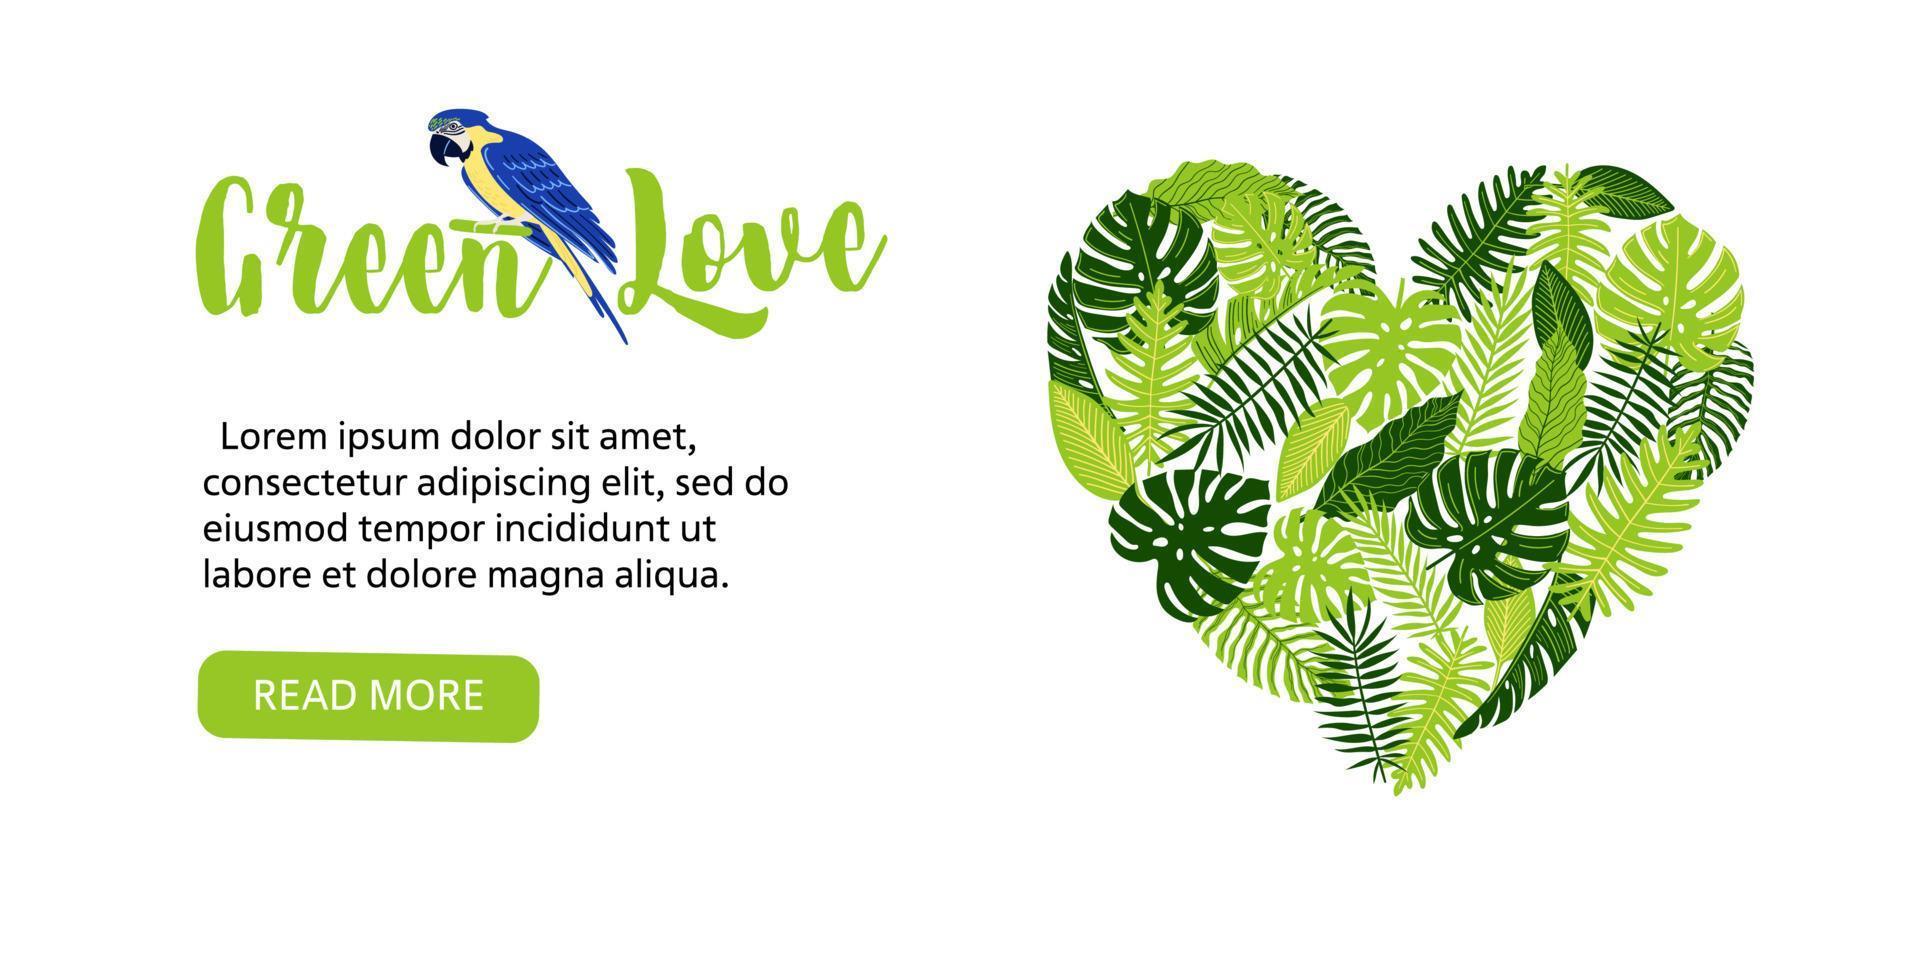 webbanner, flyer met hartvormige tropische monsterabladeren, varen, palm, banaan en papegaai of ara. vector botanische illustratie, ga groen ontwerp, red het planeetconcept